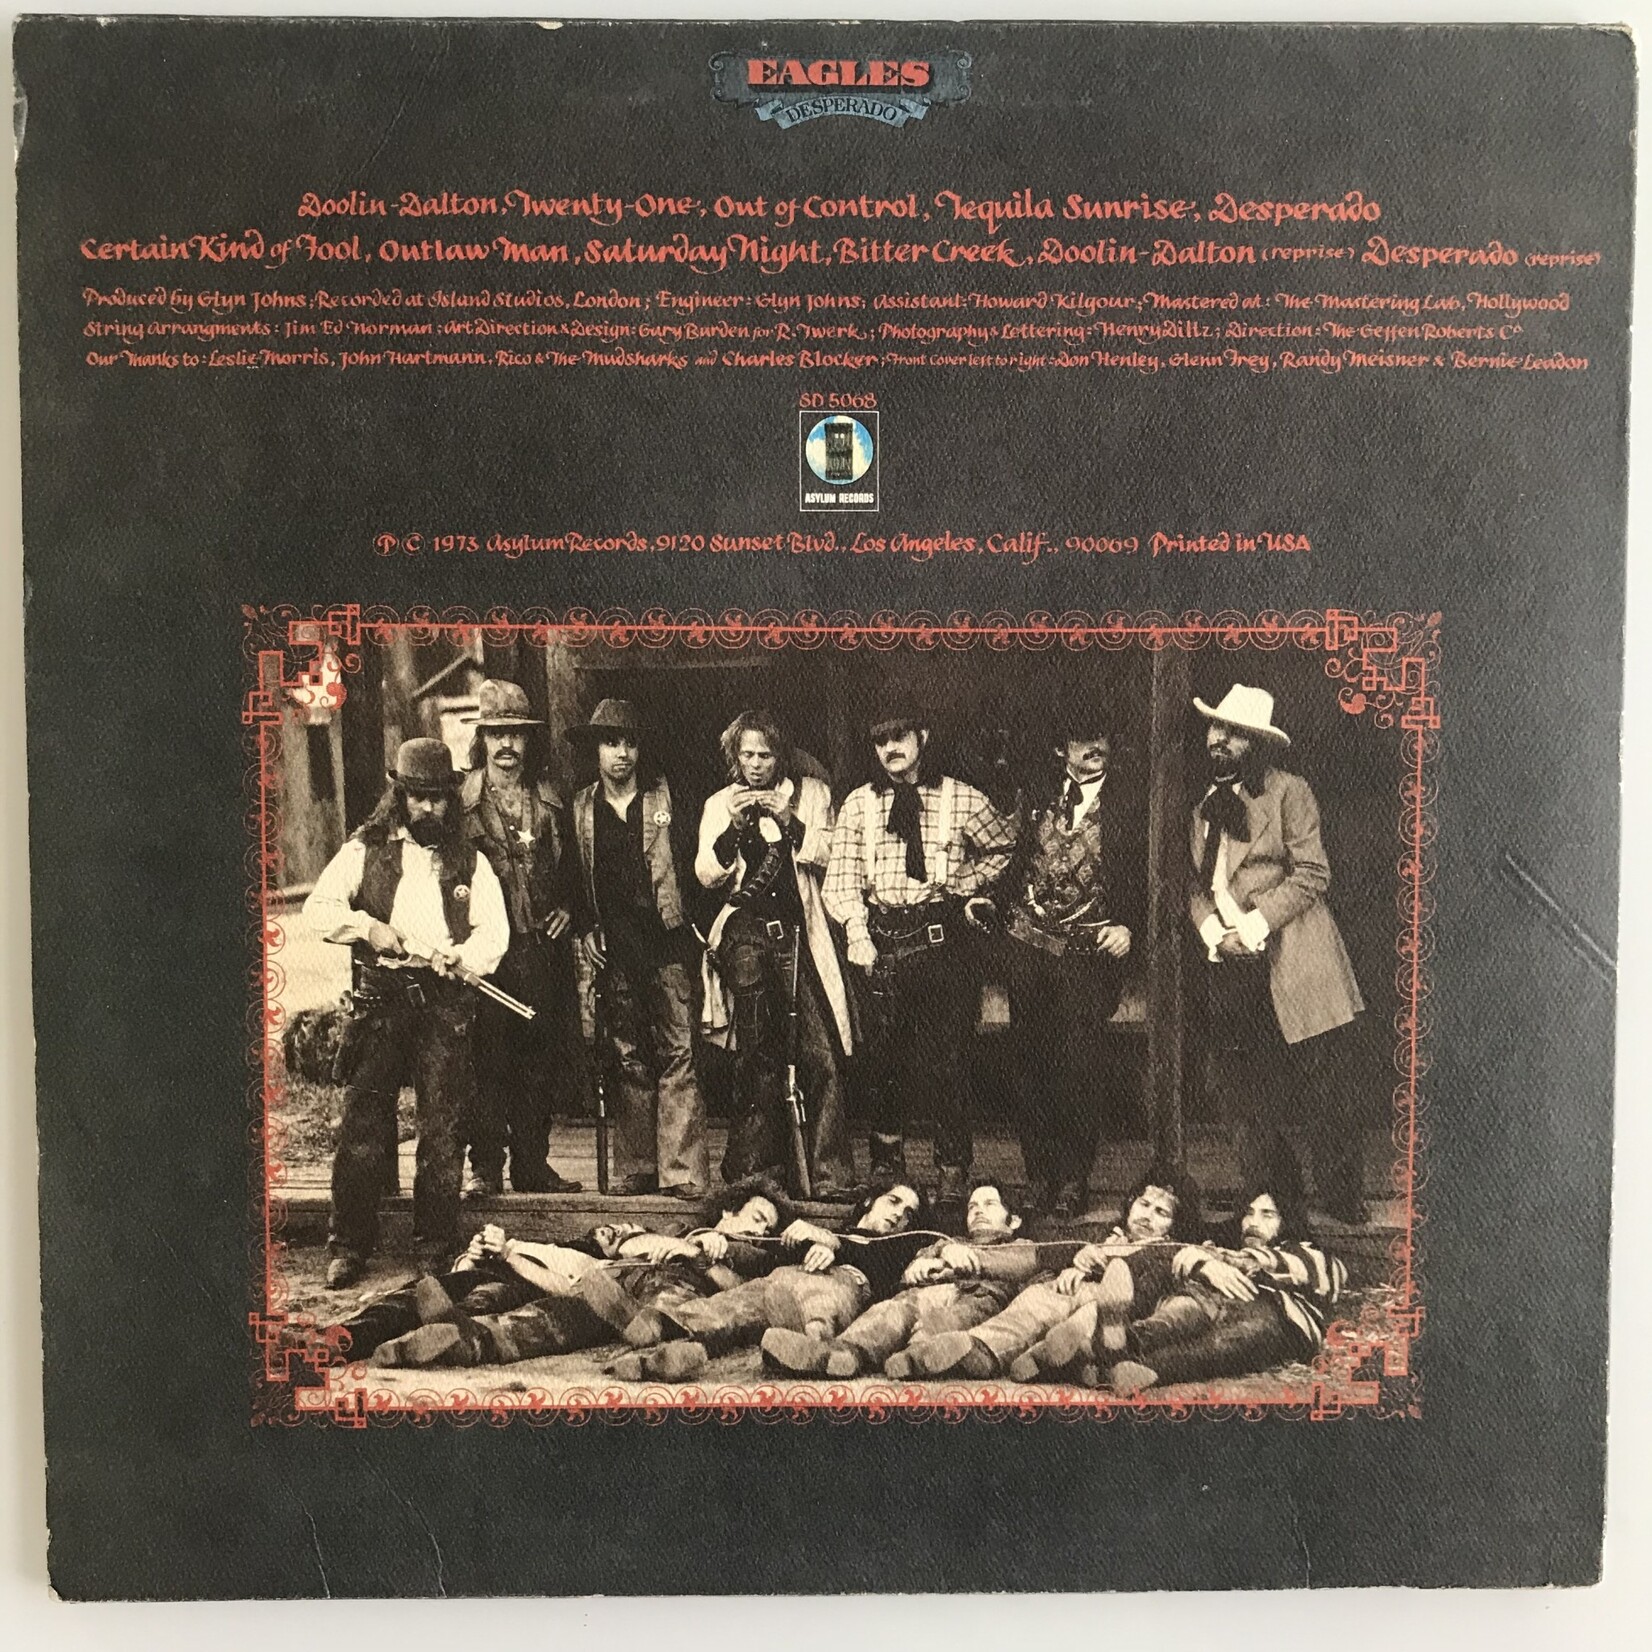 Eagles - Desperado - SD 5068 - Vinyl LP (USED)